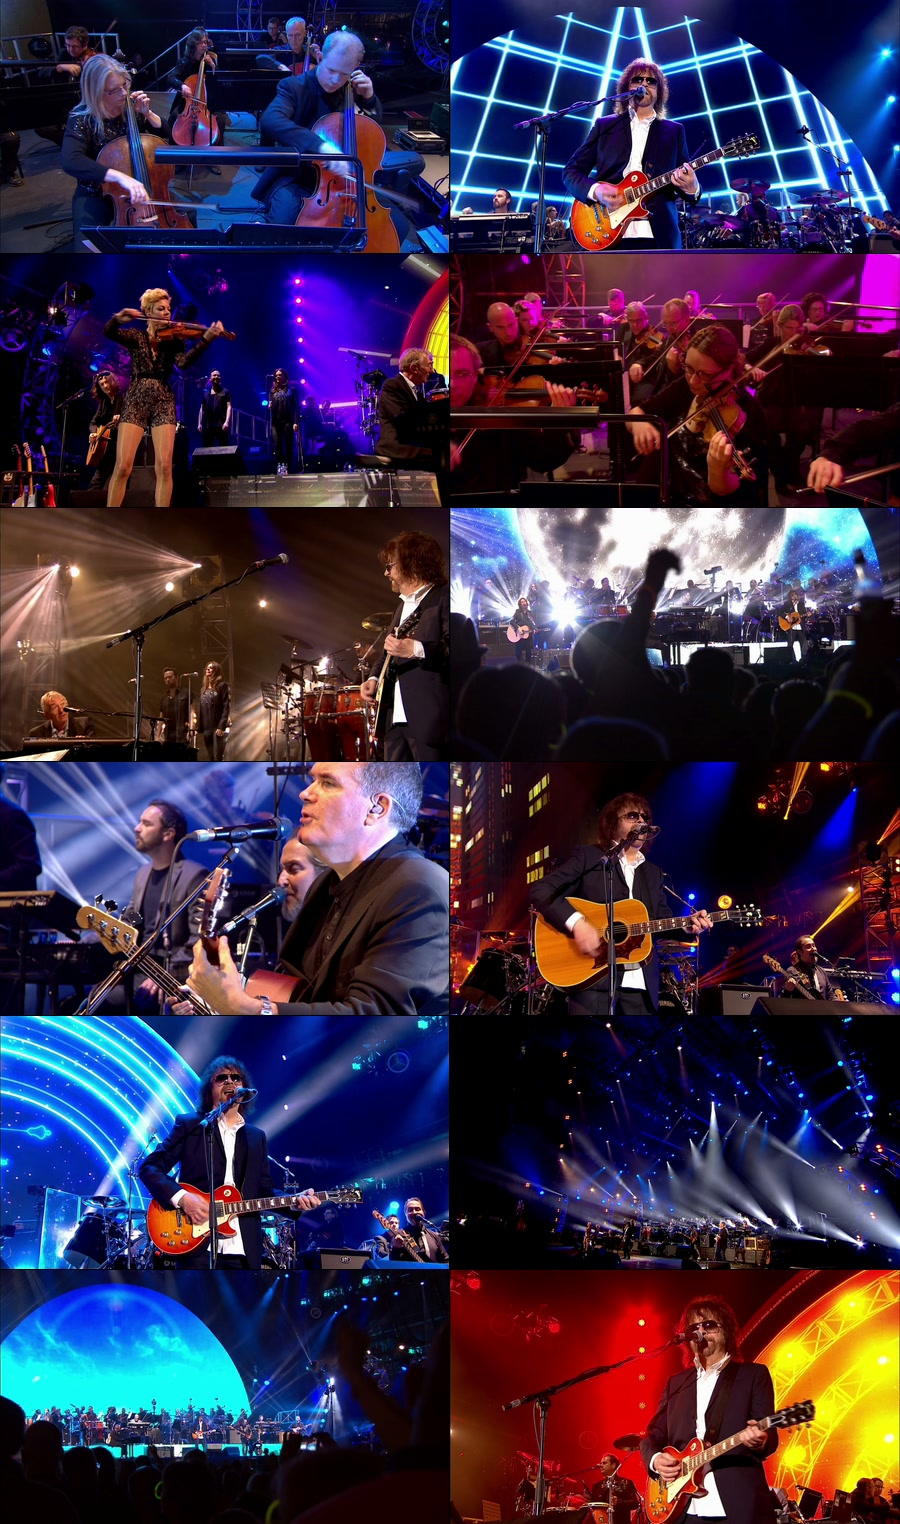 Jeff Lynne’s ELO – Live In Hyde Park 海德公园演唱会 (2014) 1080P蓝光原盘 [BDMV 39.6G]Blu-ray、Blu-ray、摇滚演唱会、欧美演唱会、蓝光演唱会4